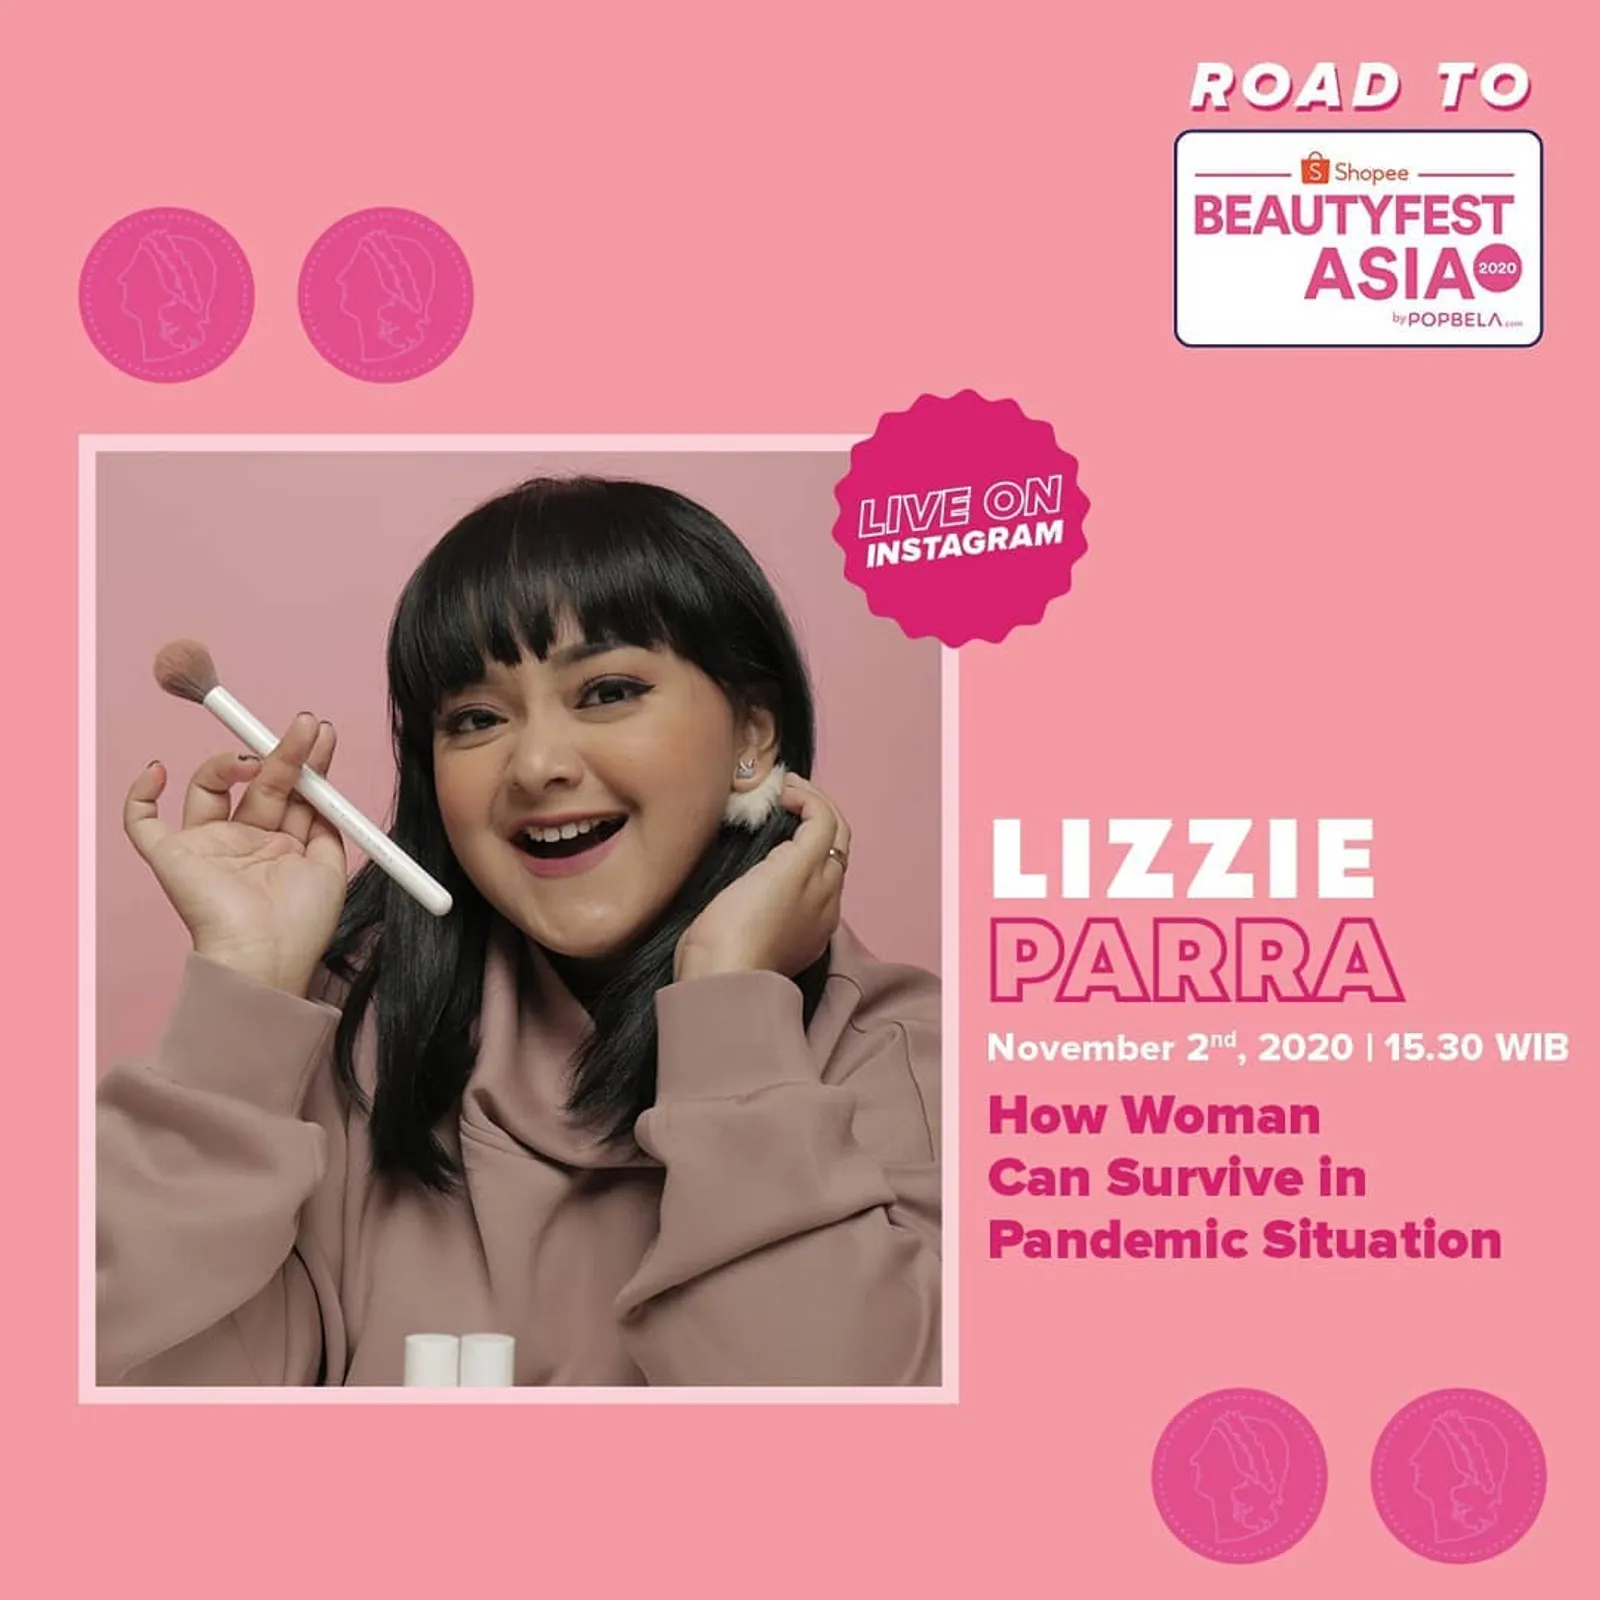 Road to BeautyFest Asia 2020 Hadirkan Lizzie Parra & Dinar Amanda